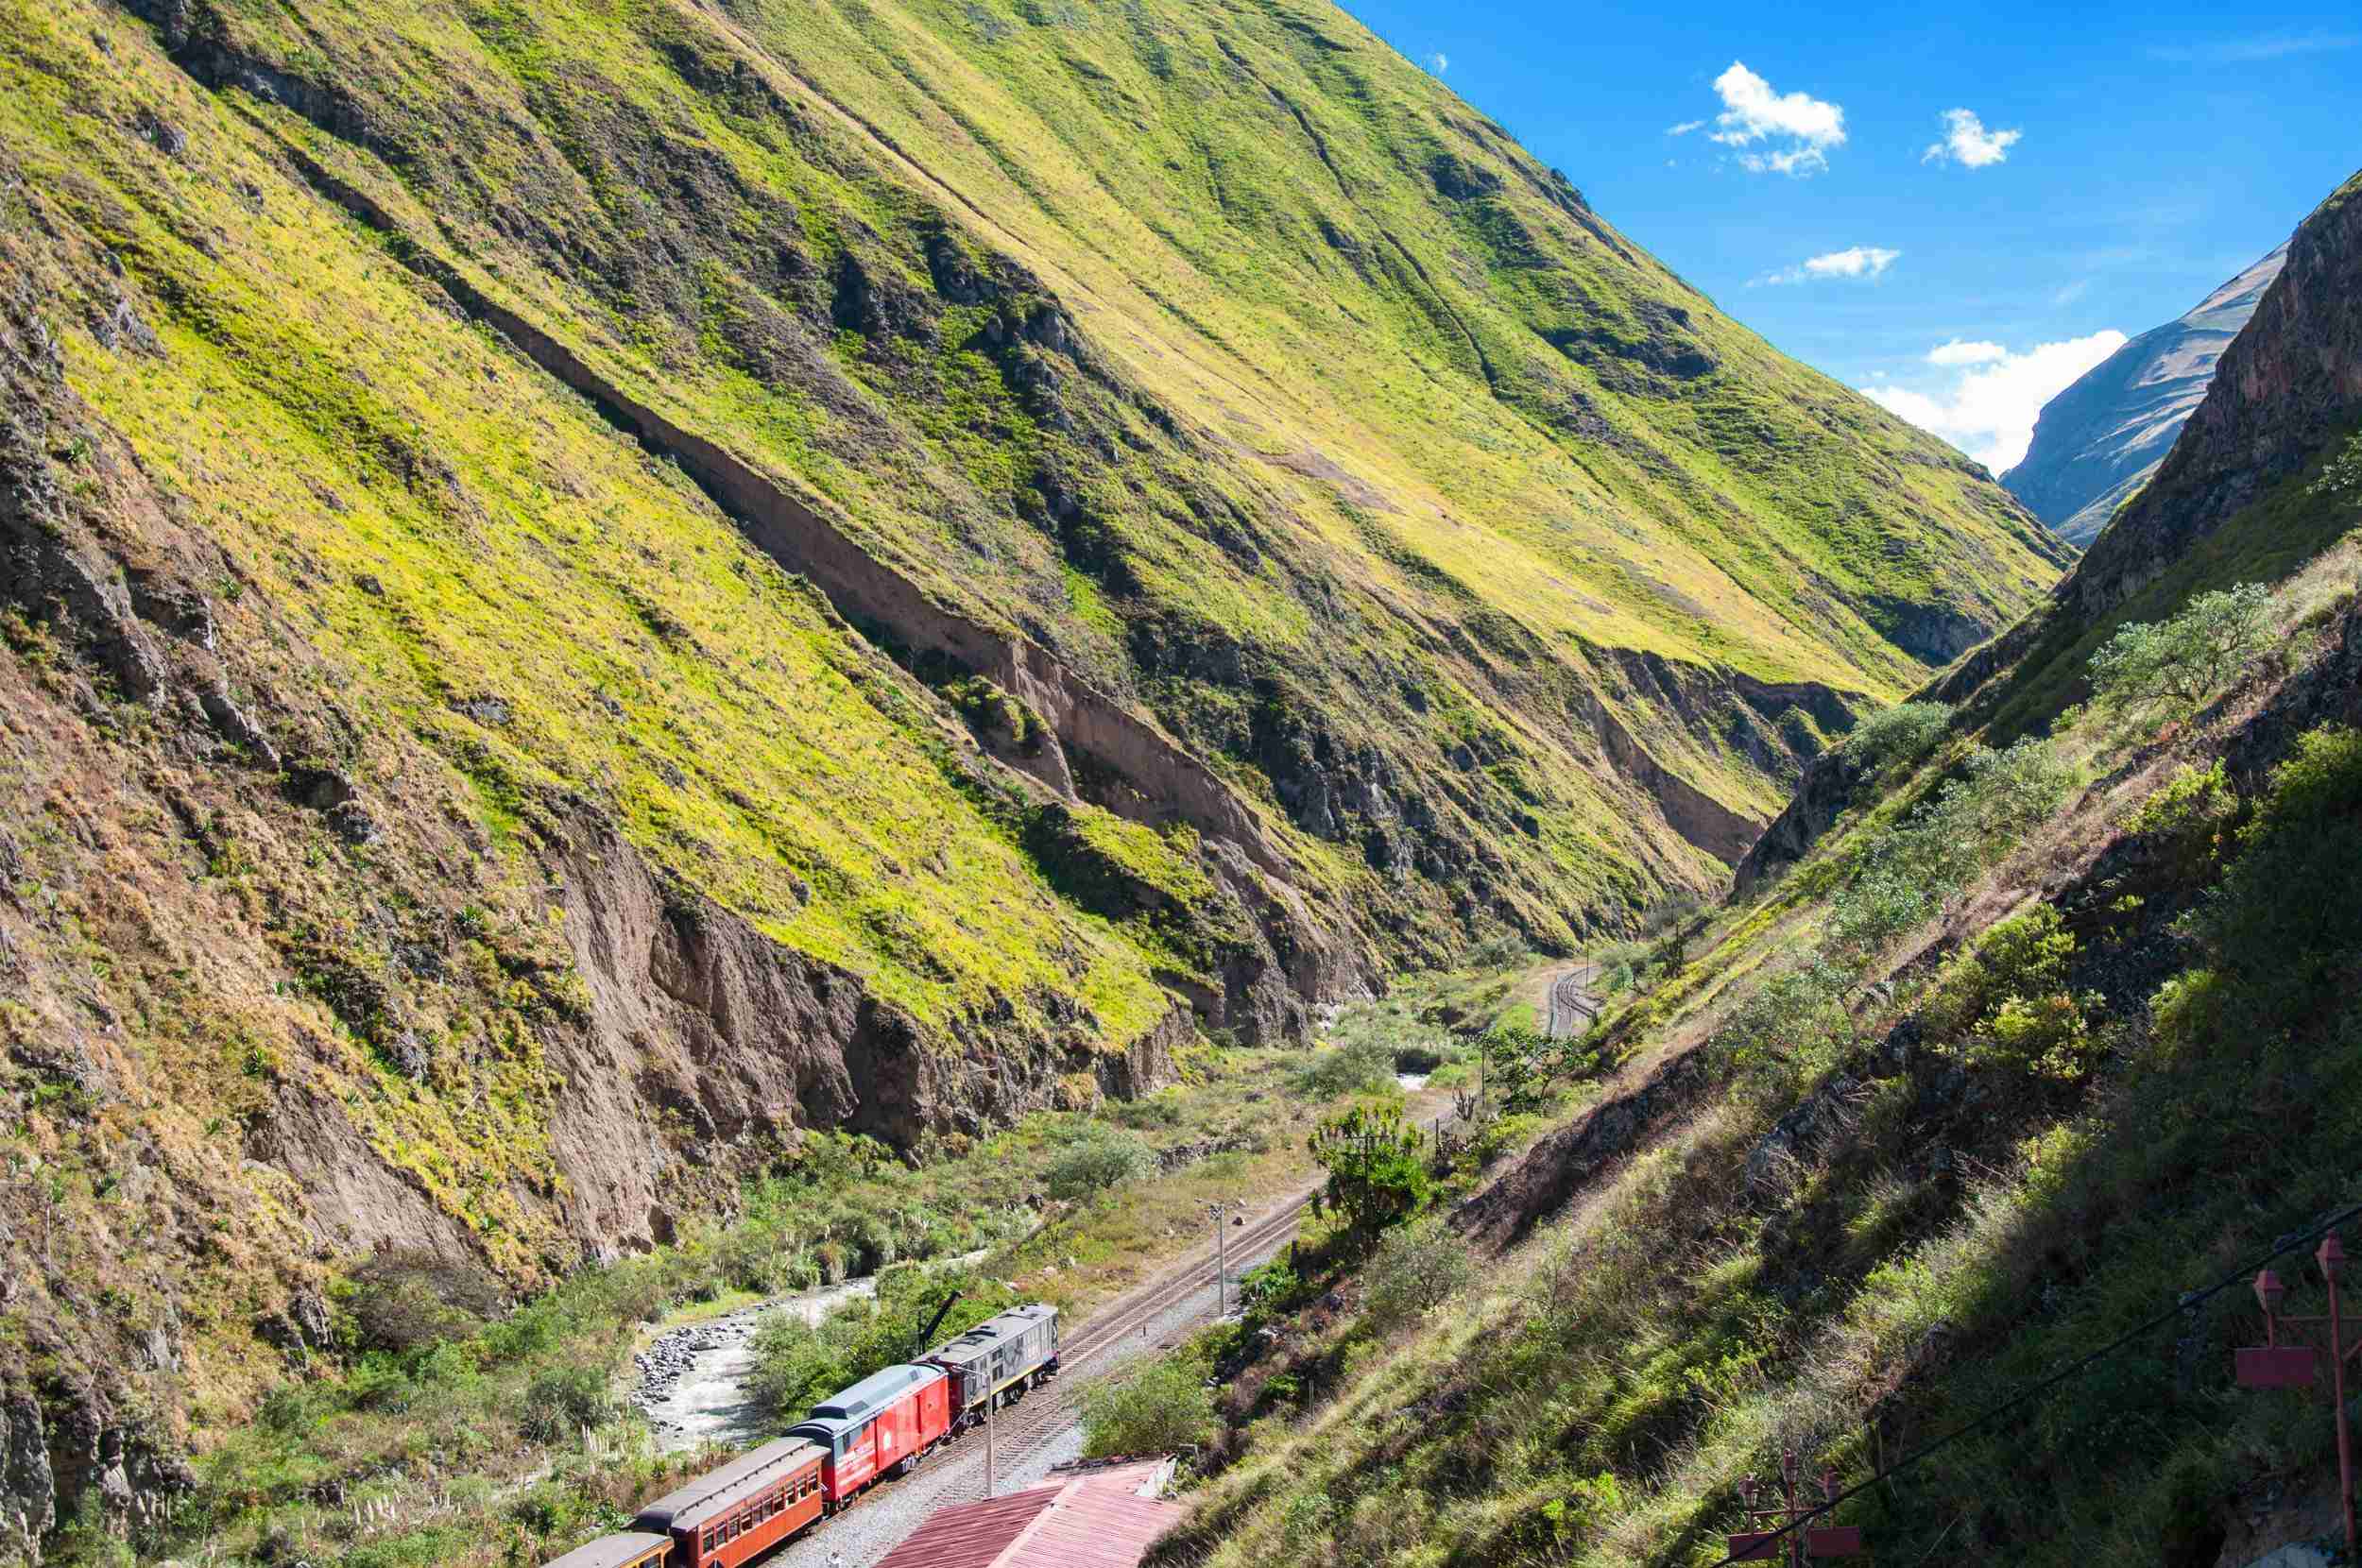 Train traveling through narrow canyon with steep mountainous sides in Ecuador